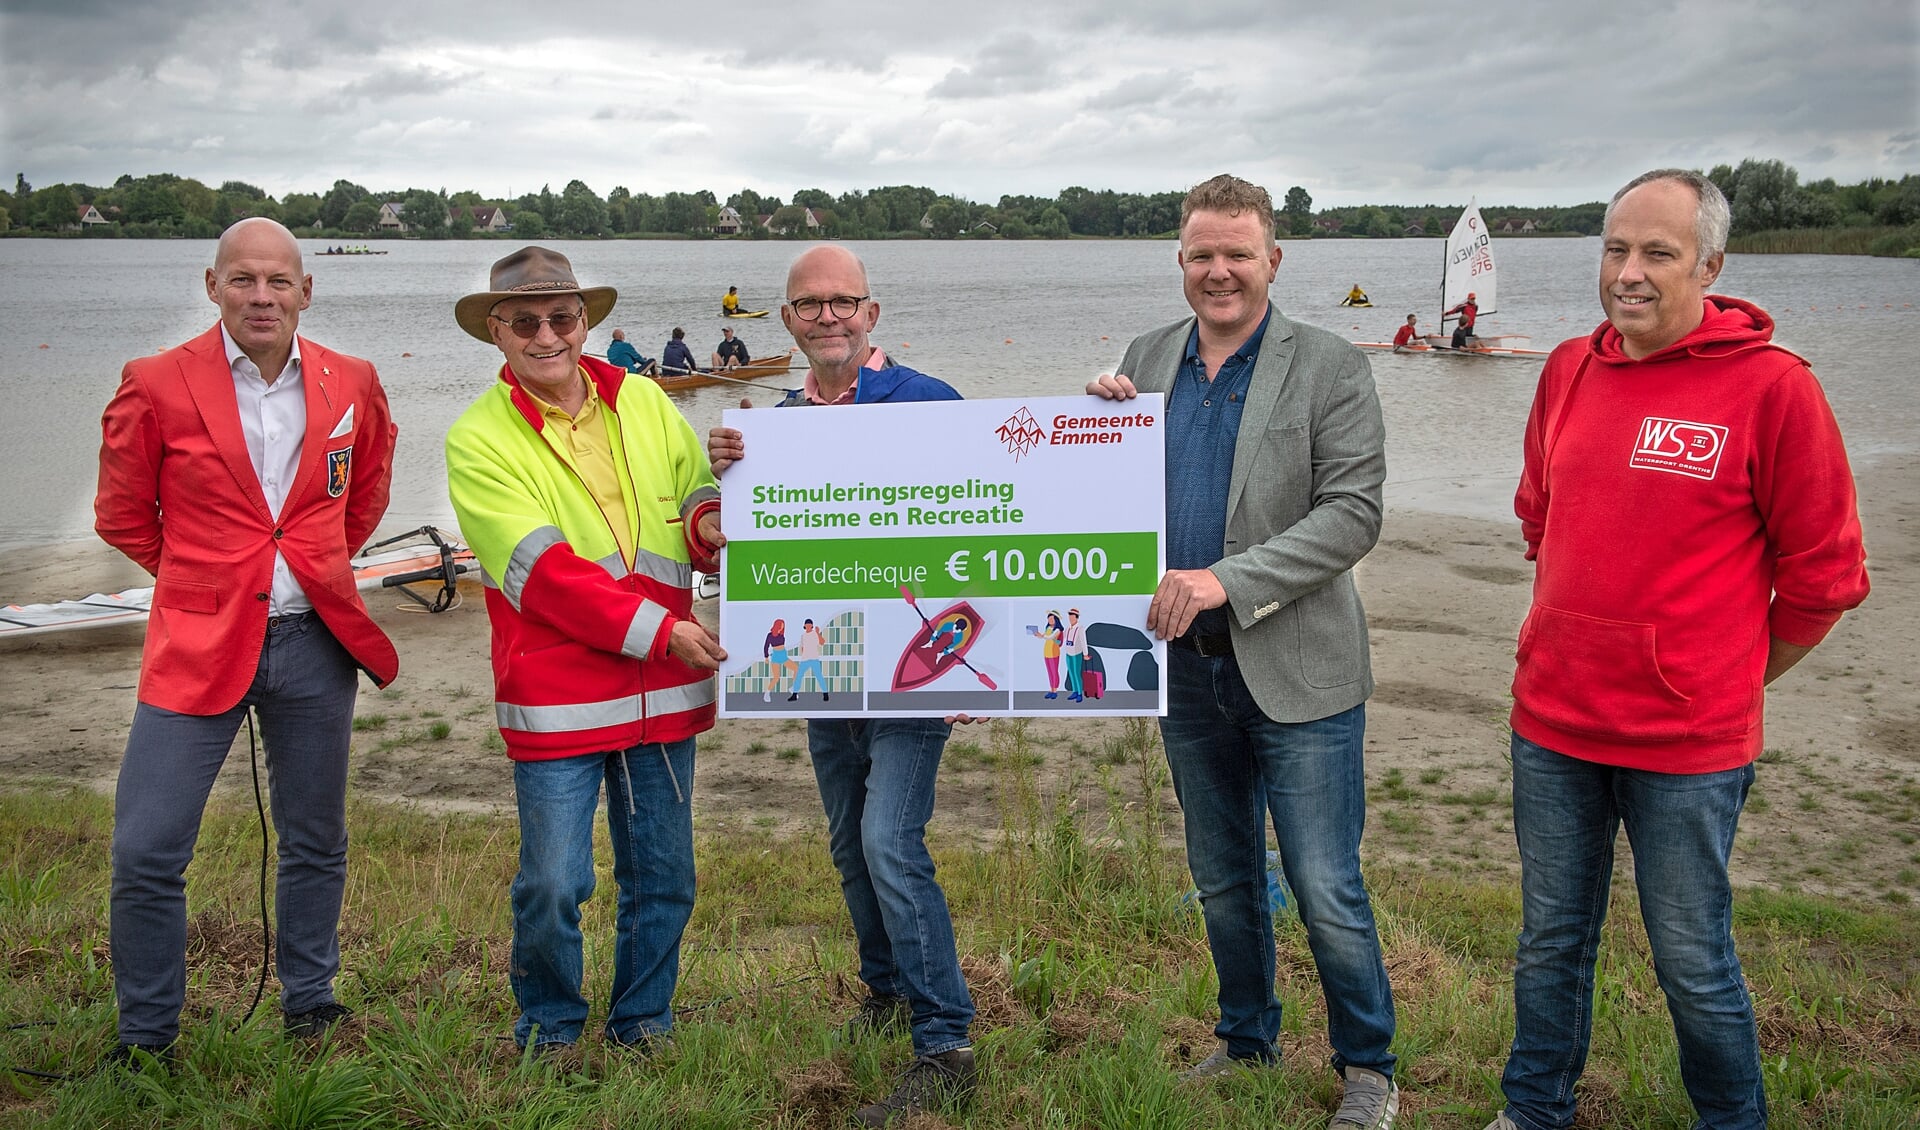 Wethouder Robert Kleine heeft zaterdag een cheque overhandigd bij de opening van de watersportlocatie bij de Grote Rietplas. Foto: Jan Anninga.